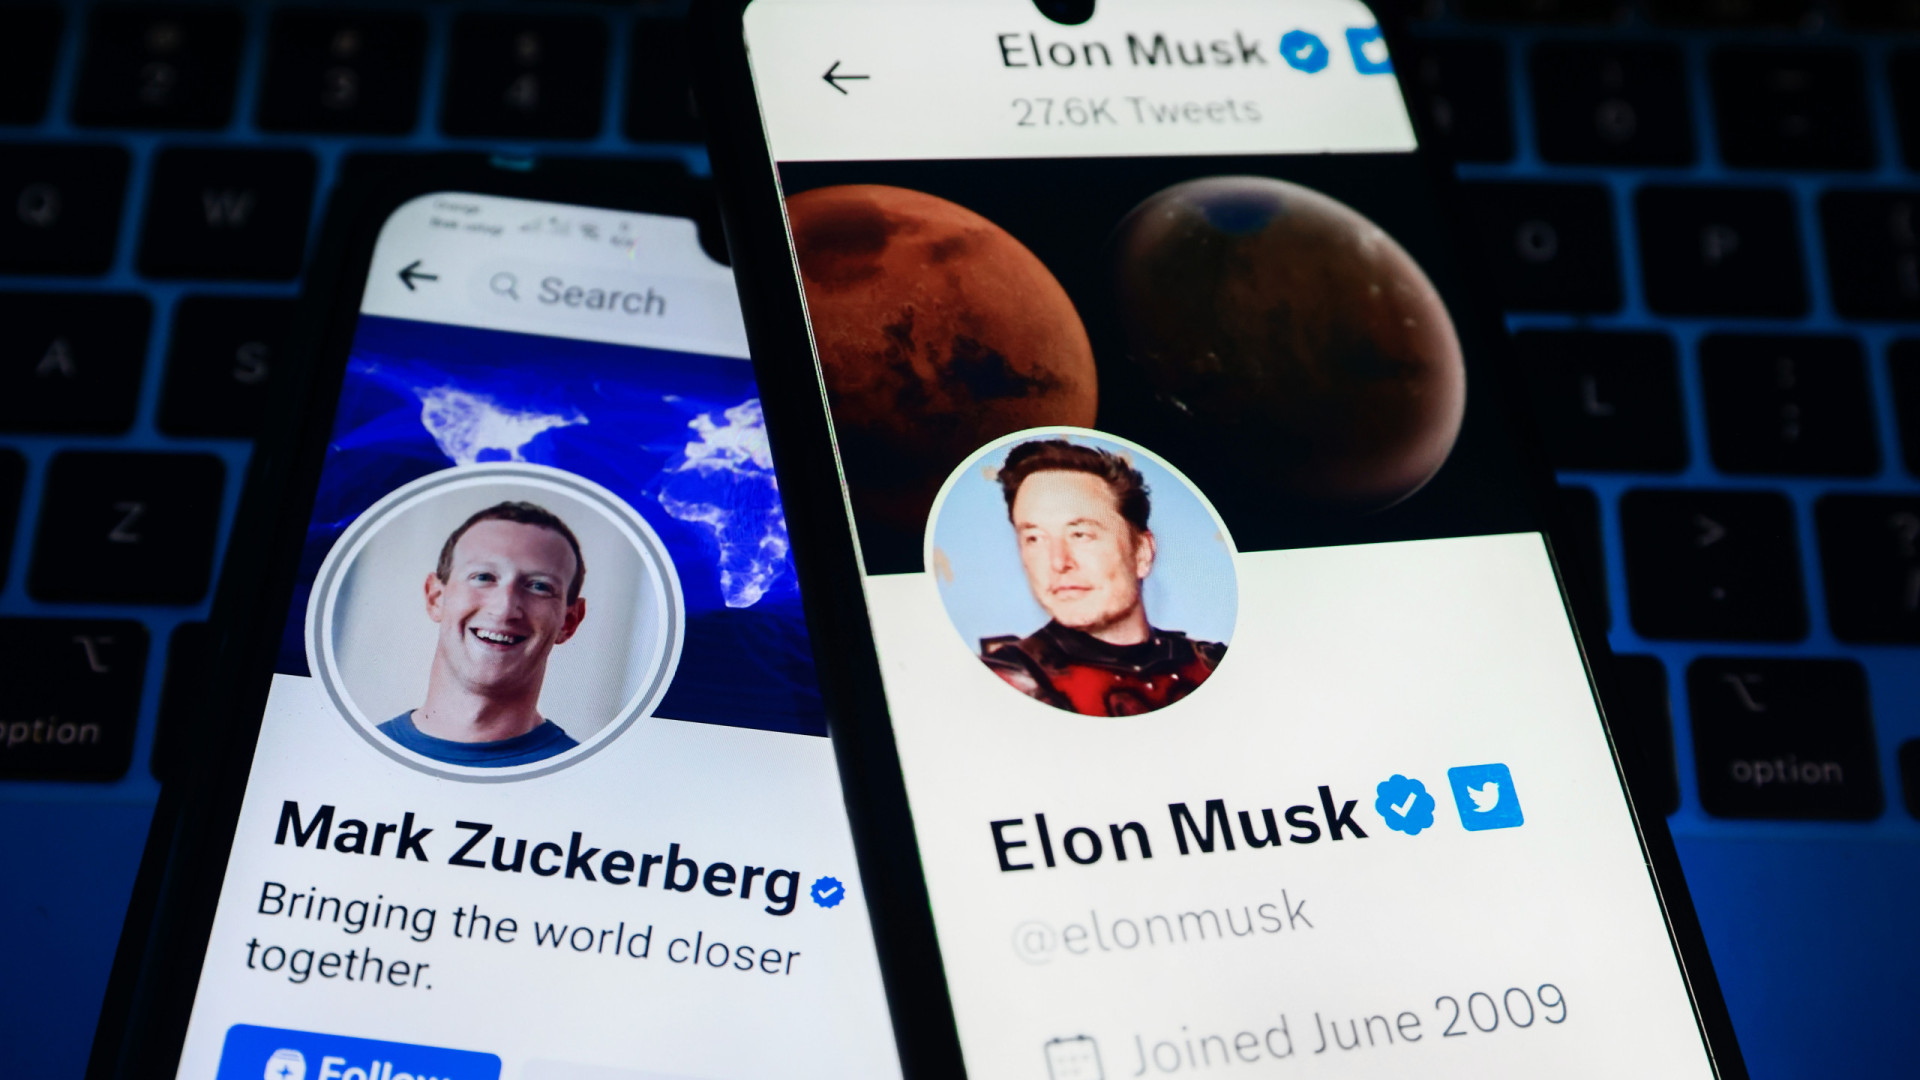 zuckerberg ultrapassa elon musk na lista dos mais ricos do mundo